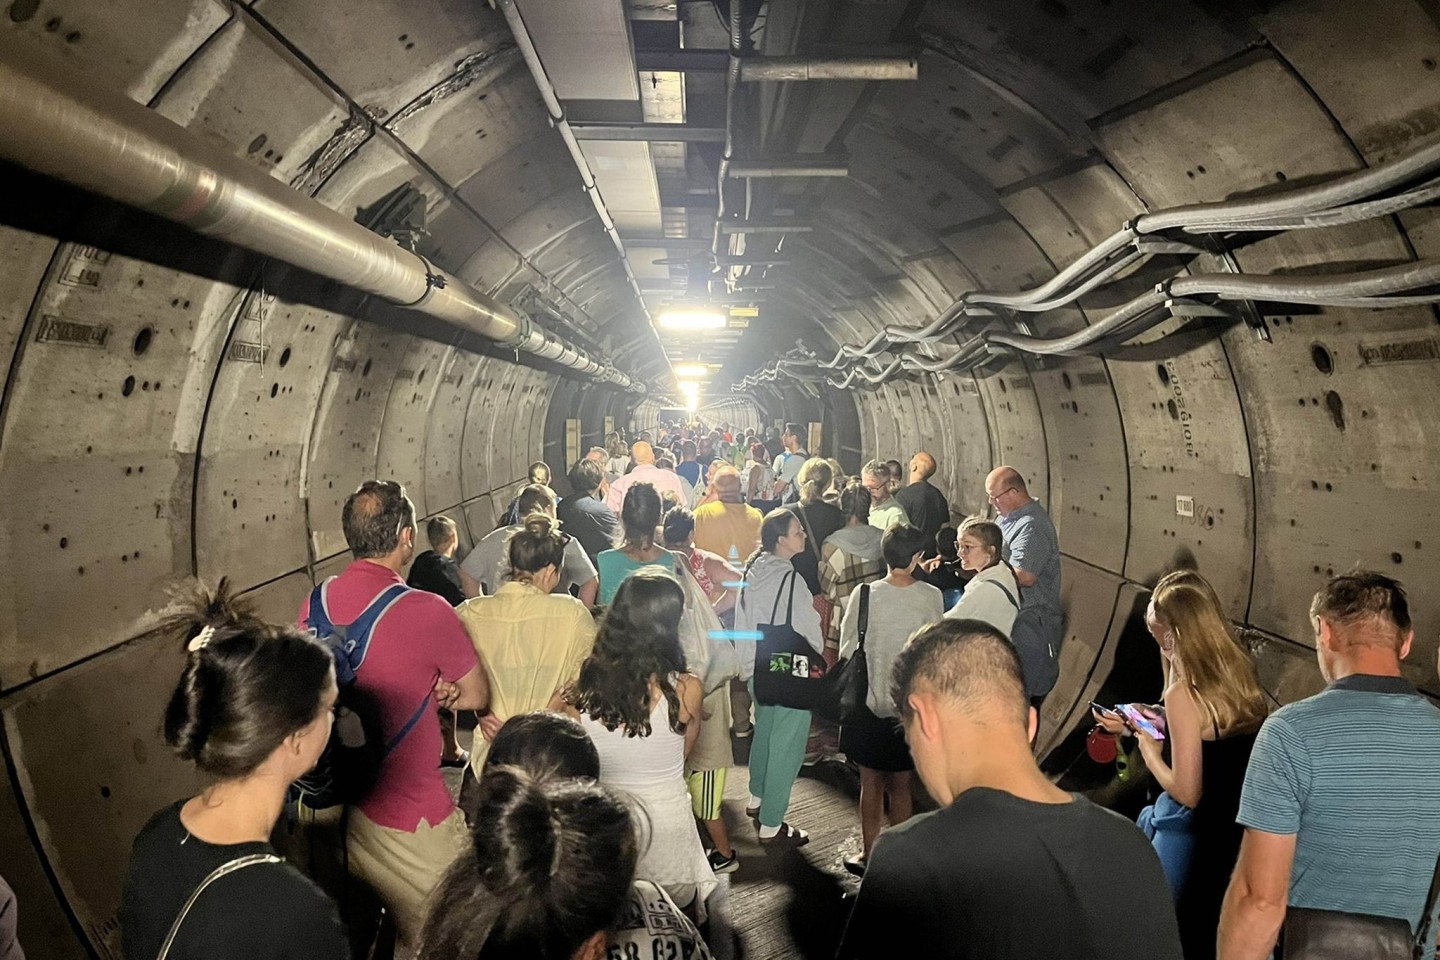 Nach der Zug-Panne mussten Passagiere im Tunnel ihre Wagen verlassen und wurden zu Fuß durch den Nottunnel begleitet.